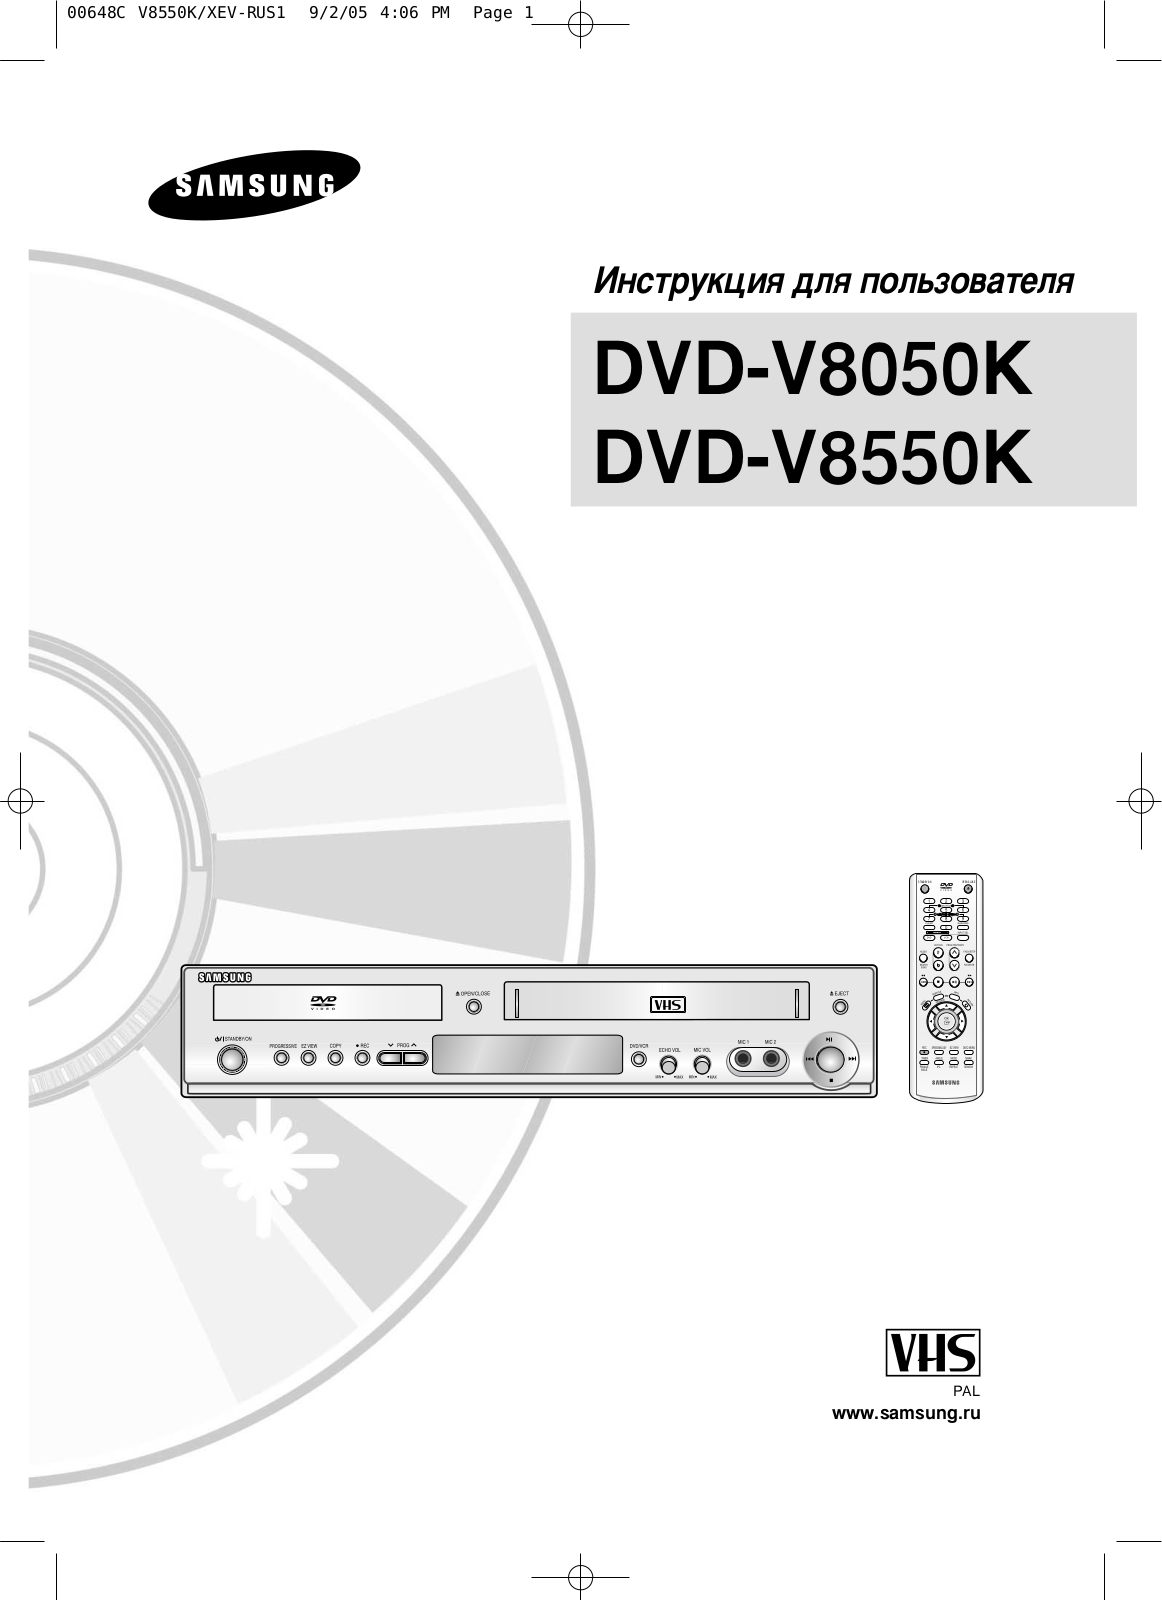 Samsung DVD-V8050K User Manual